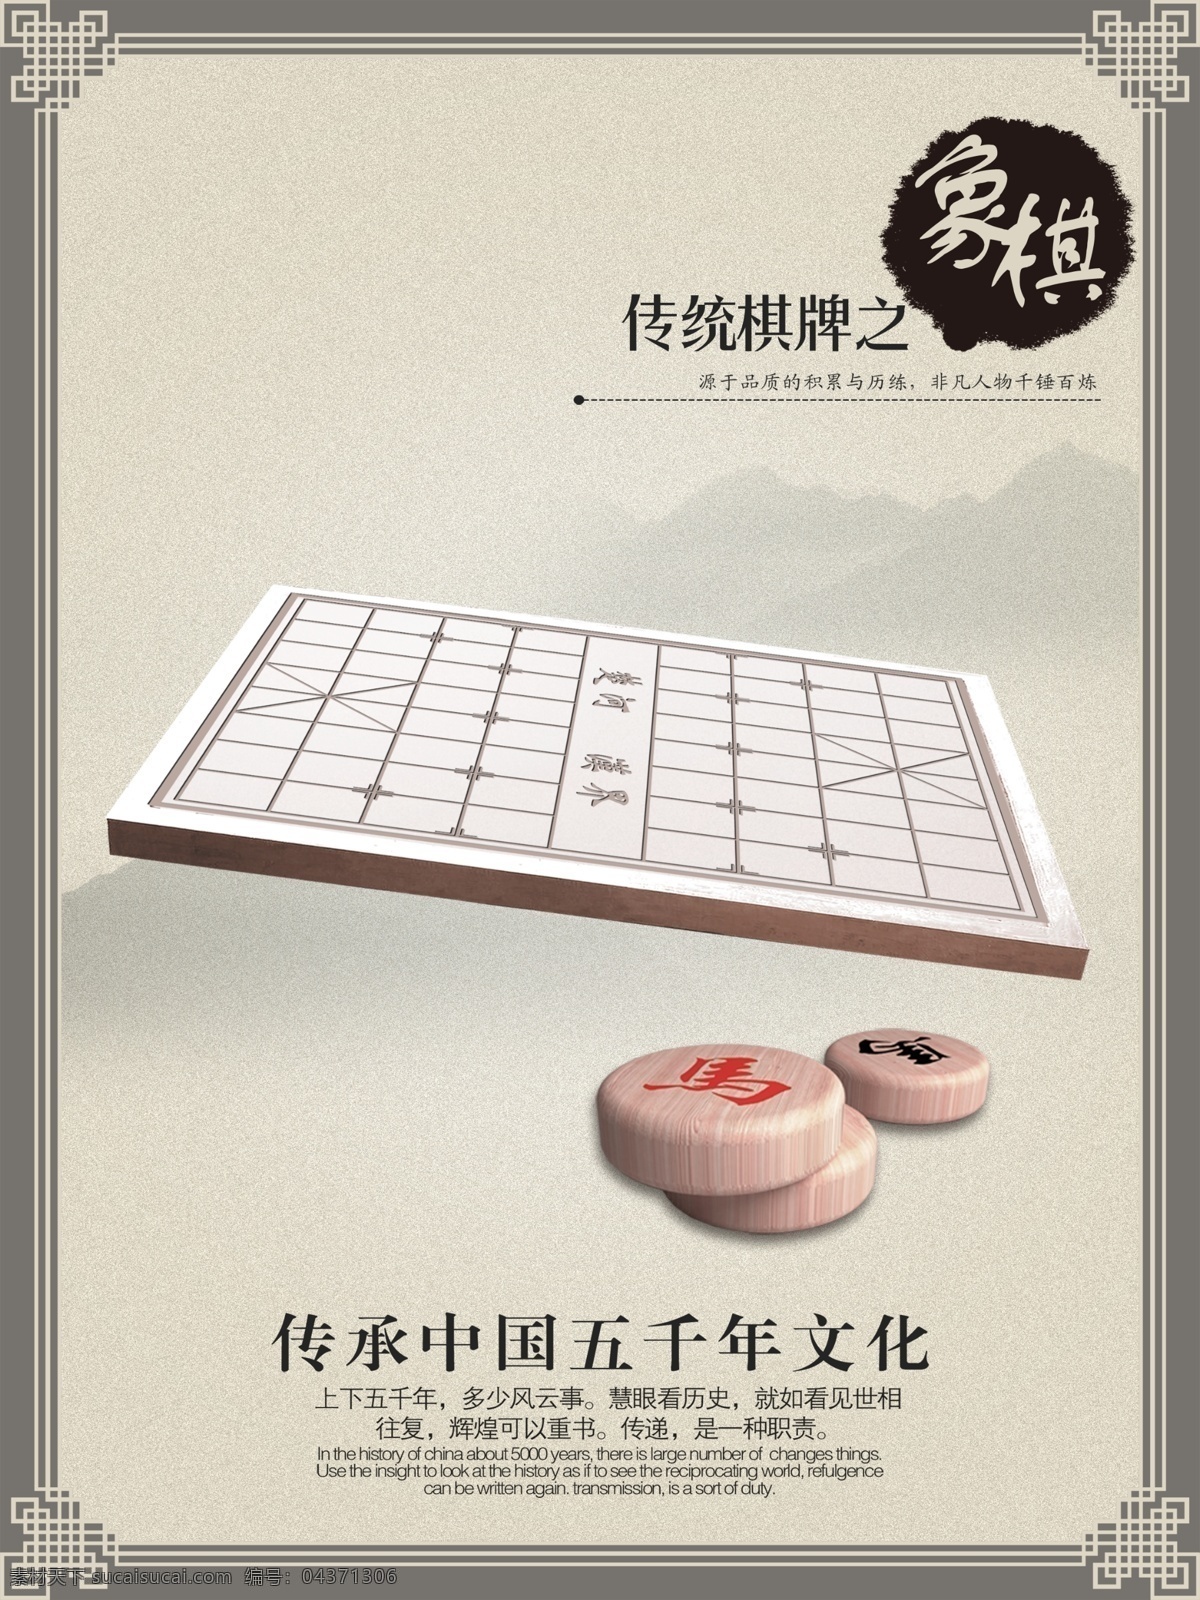 中国象棋 象棋 经典 文化 中华五千年 传统 棋牌 部队图版 相框